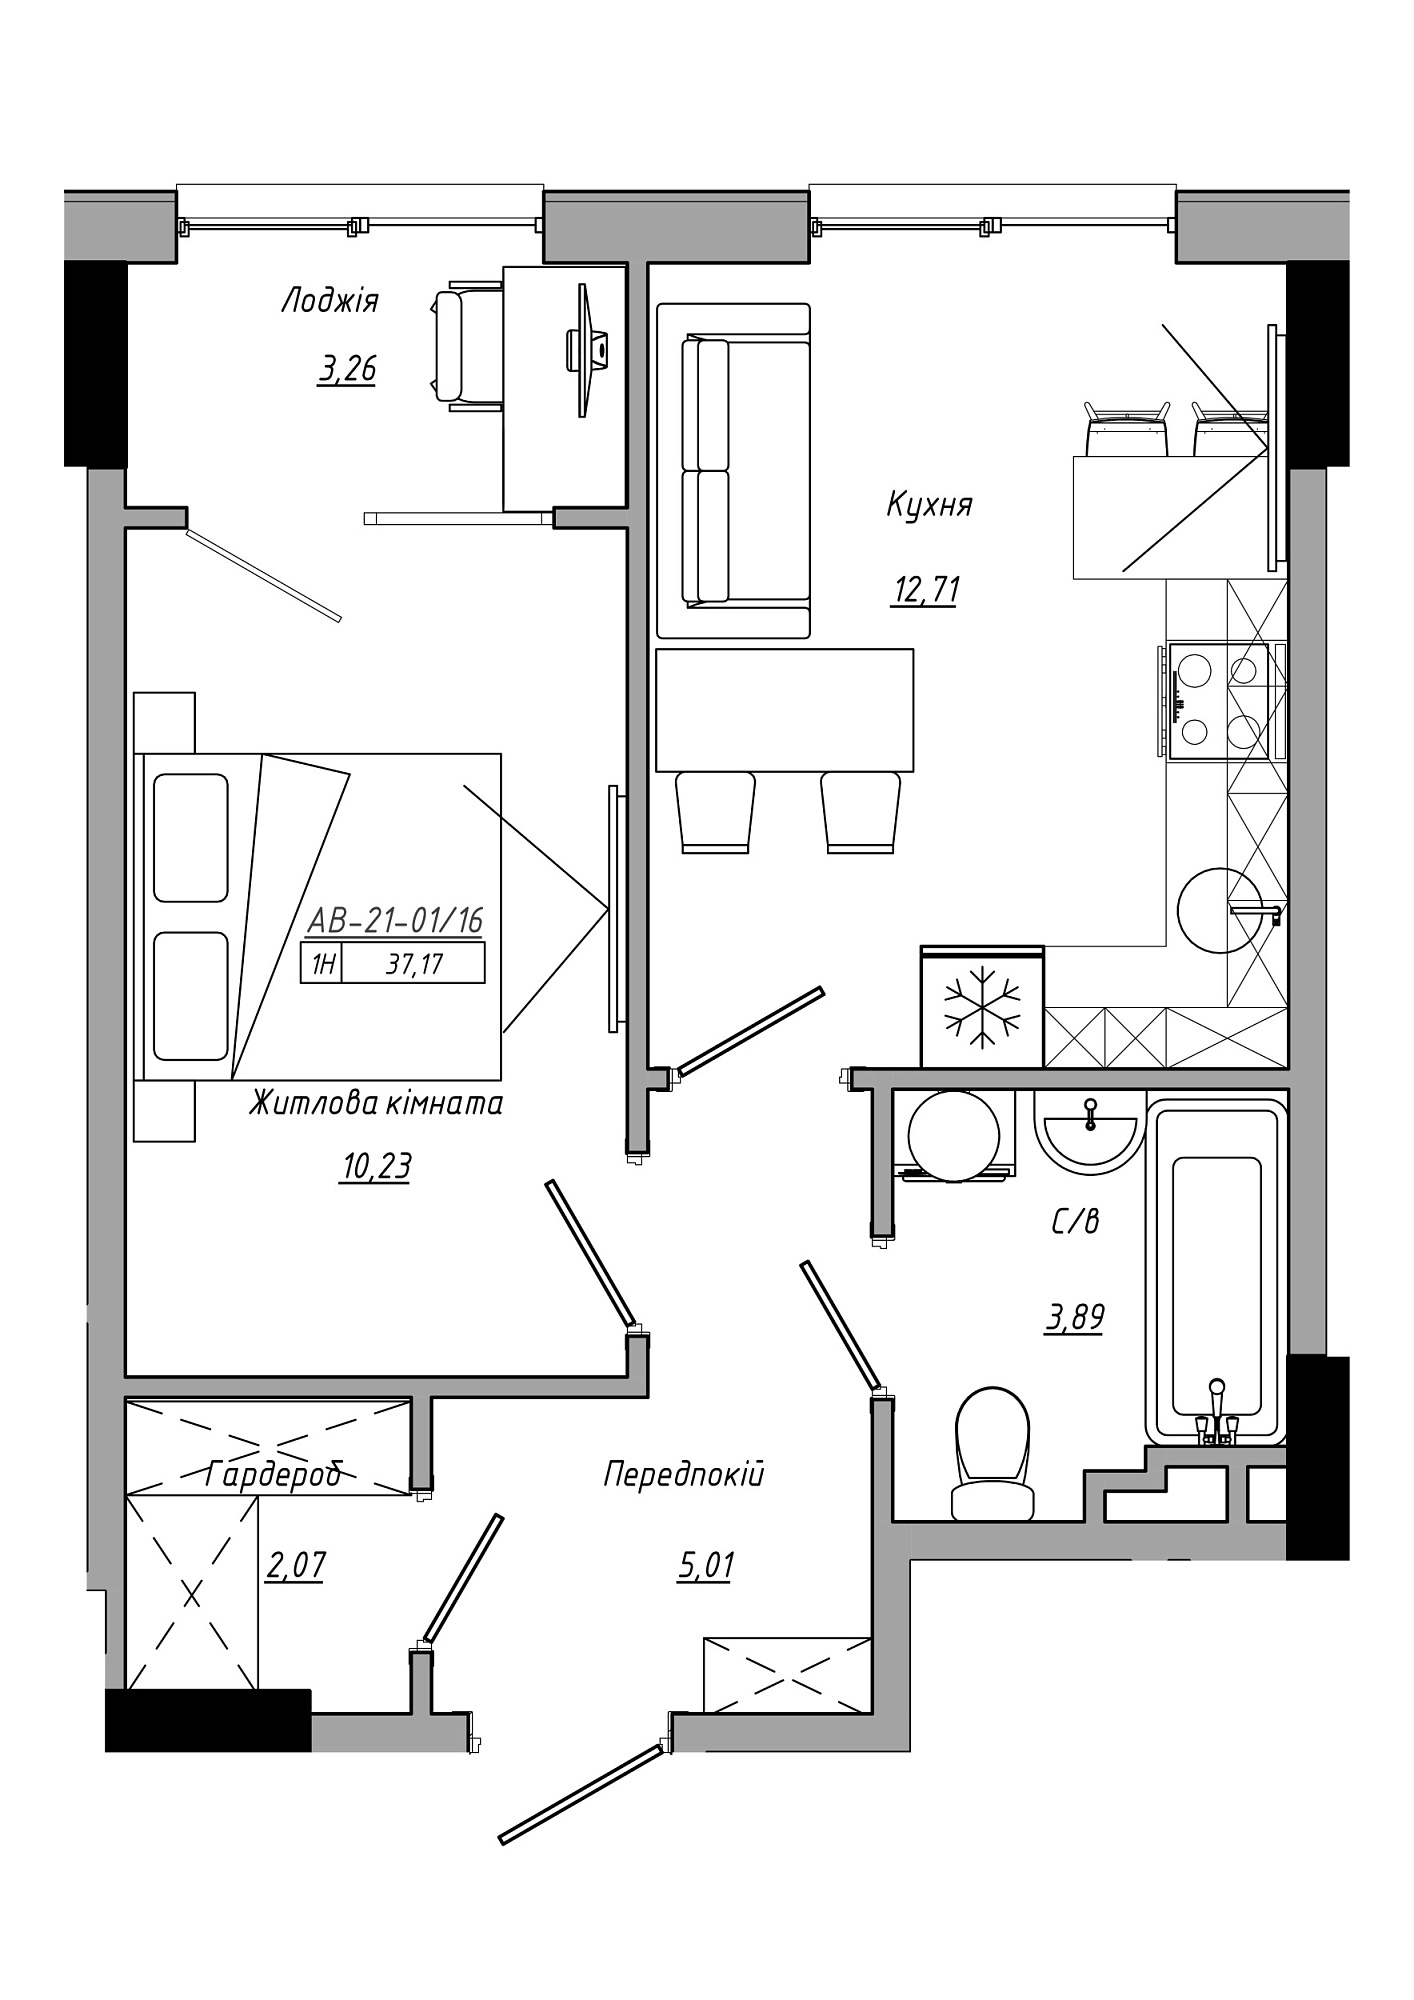 Планування 1-к квартира площею 37.17м2, AB-21-01/00016.